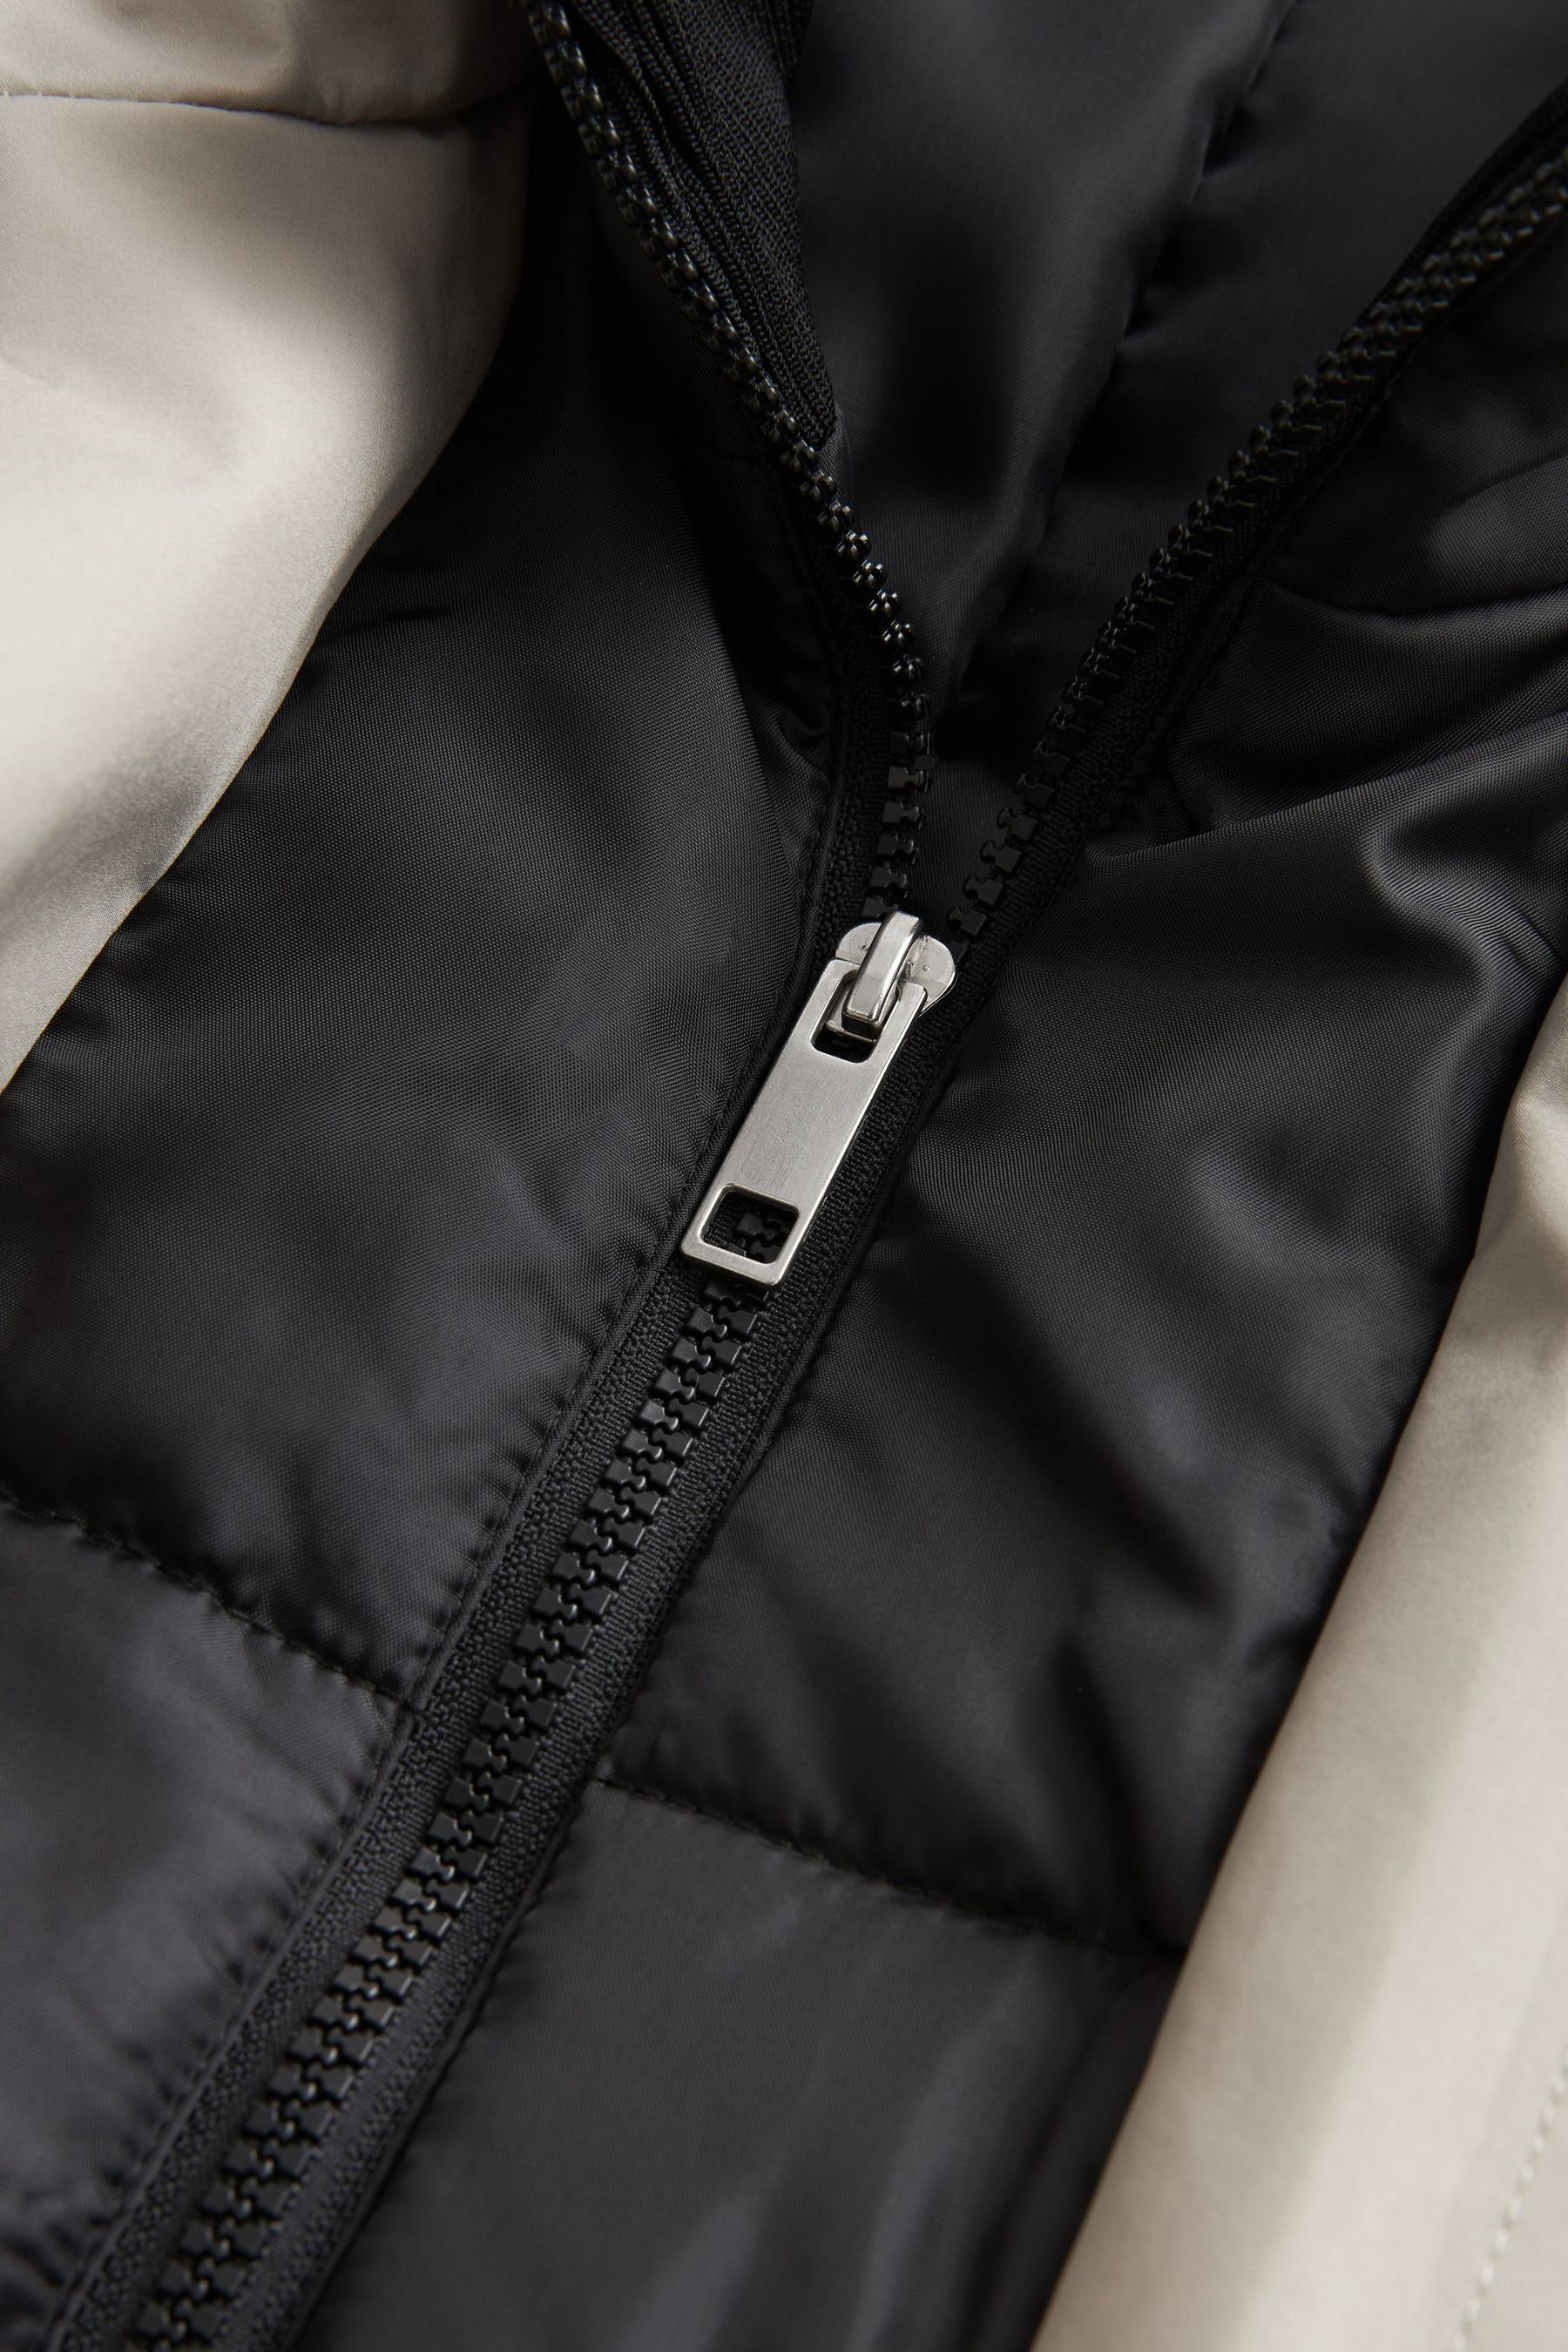 Next Regenmantel Wasserabweisende Jacke, Taschen 4 Trichterkragen, Light Grey (1-tlg)